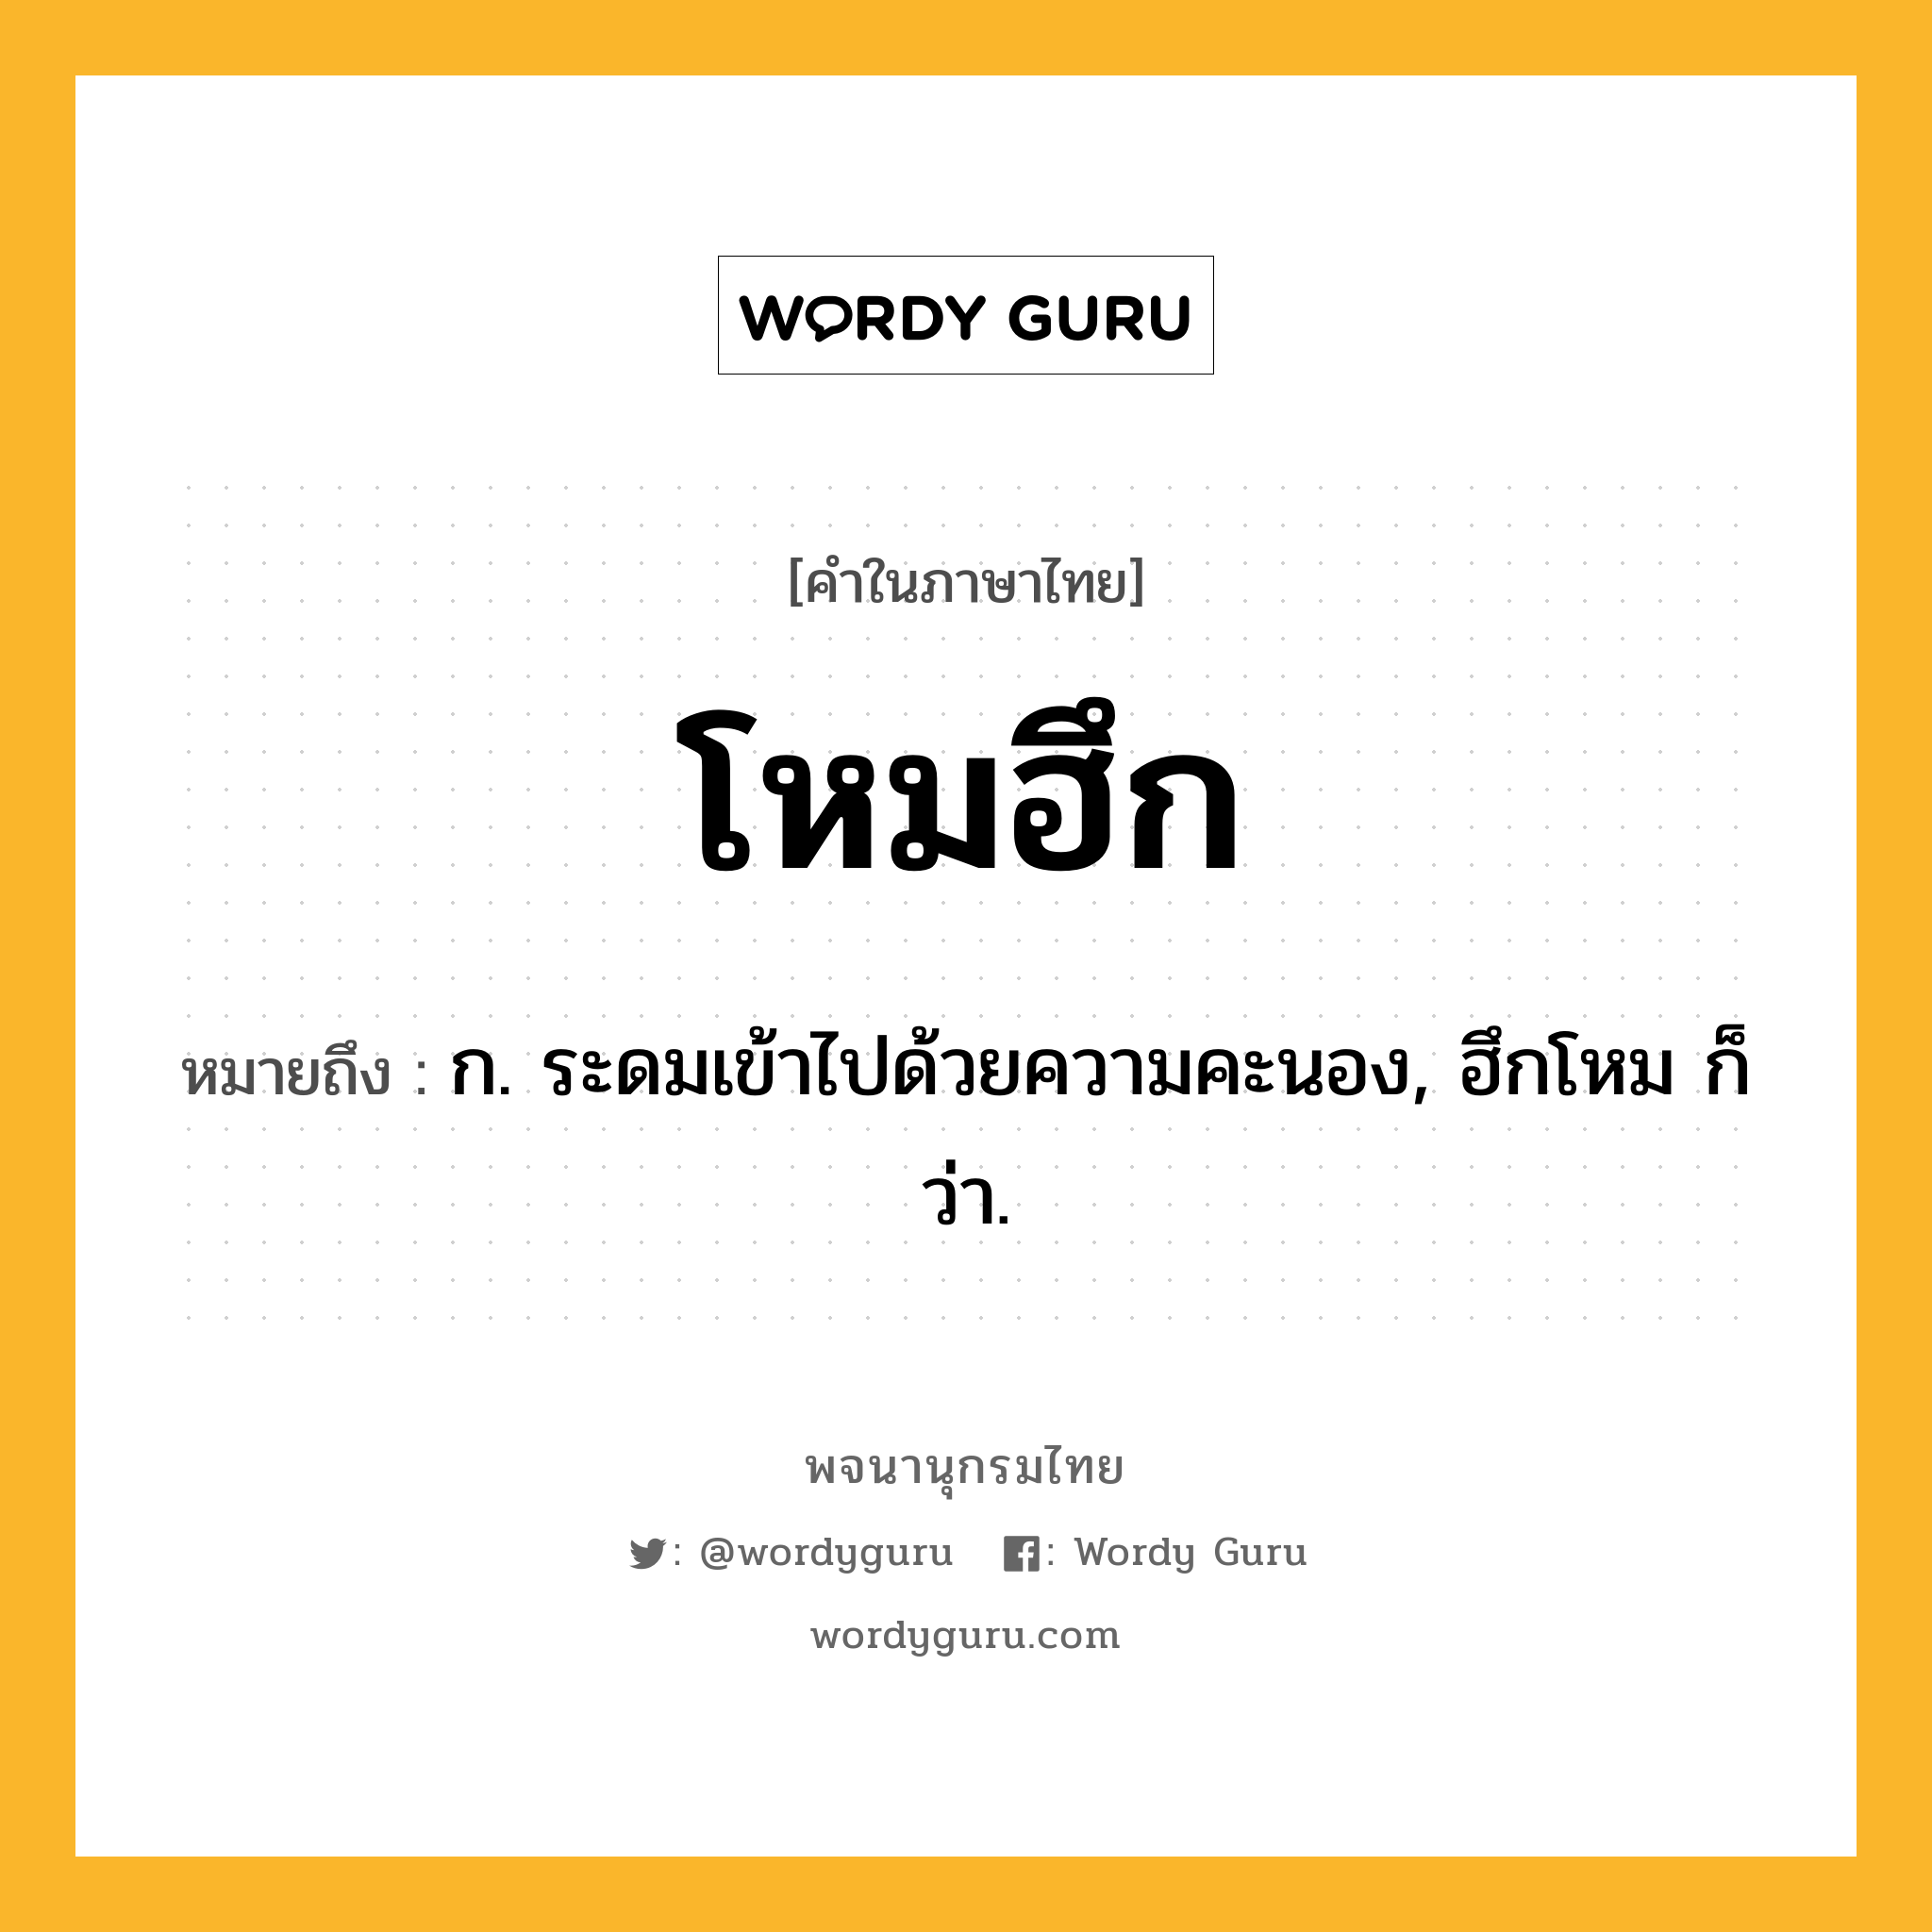 โหมฮึก ความหมาย หมายถึงอะไร?, คำในภาษาไทย โหมฮึก หมายถึง ก. ระดมเข้าไปด้วยความคะนอง, ฮึกโหม ก็ว่า.